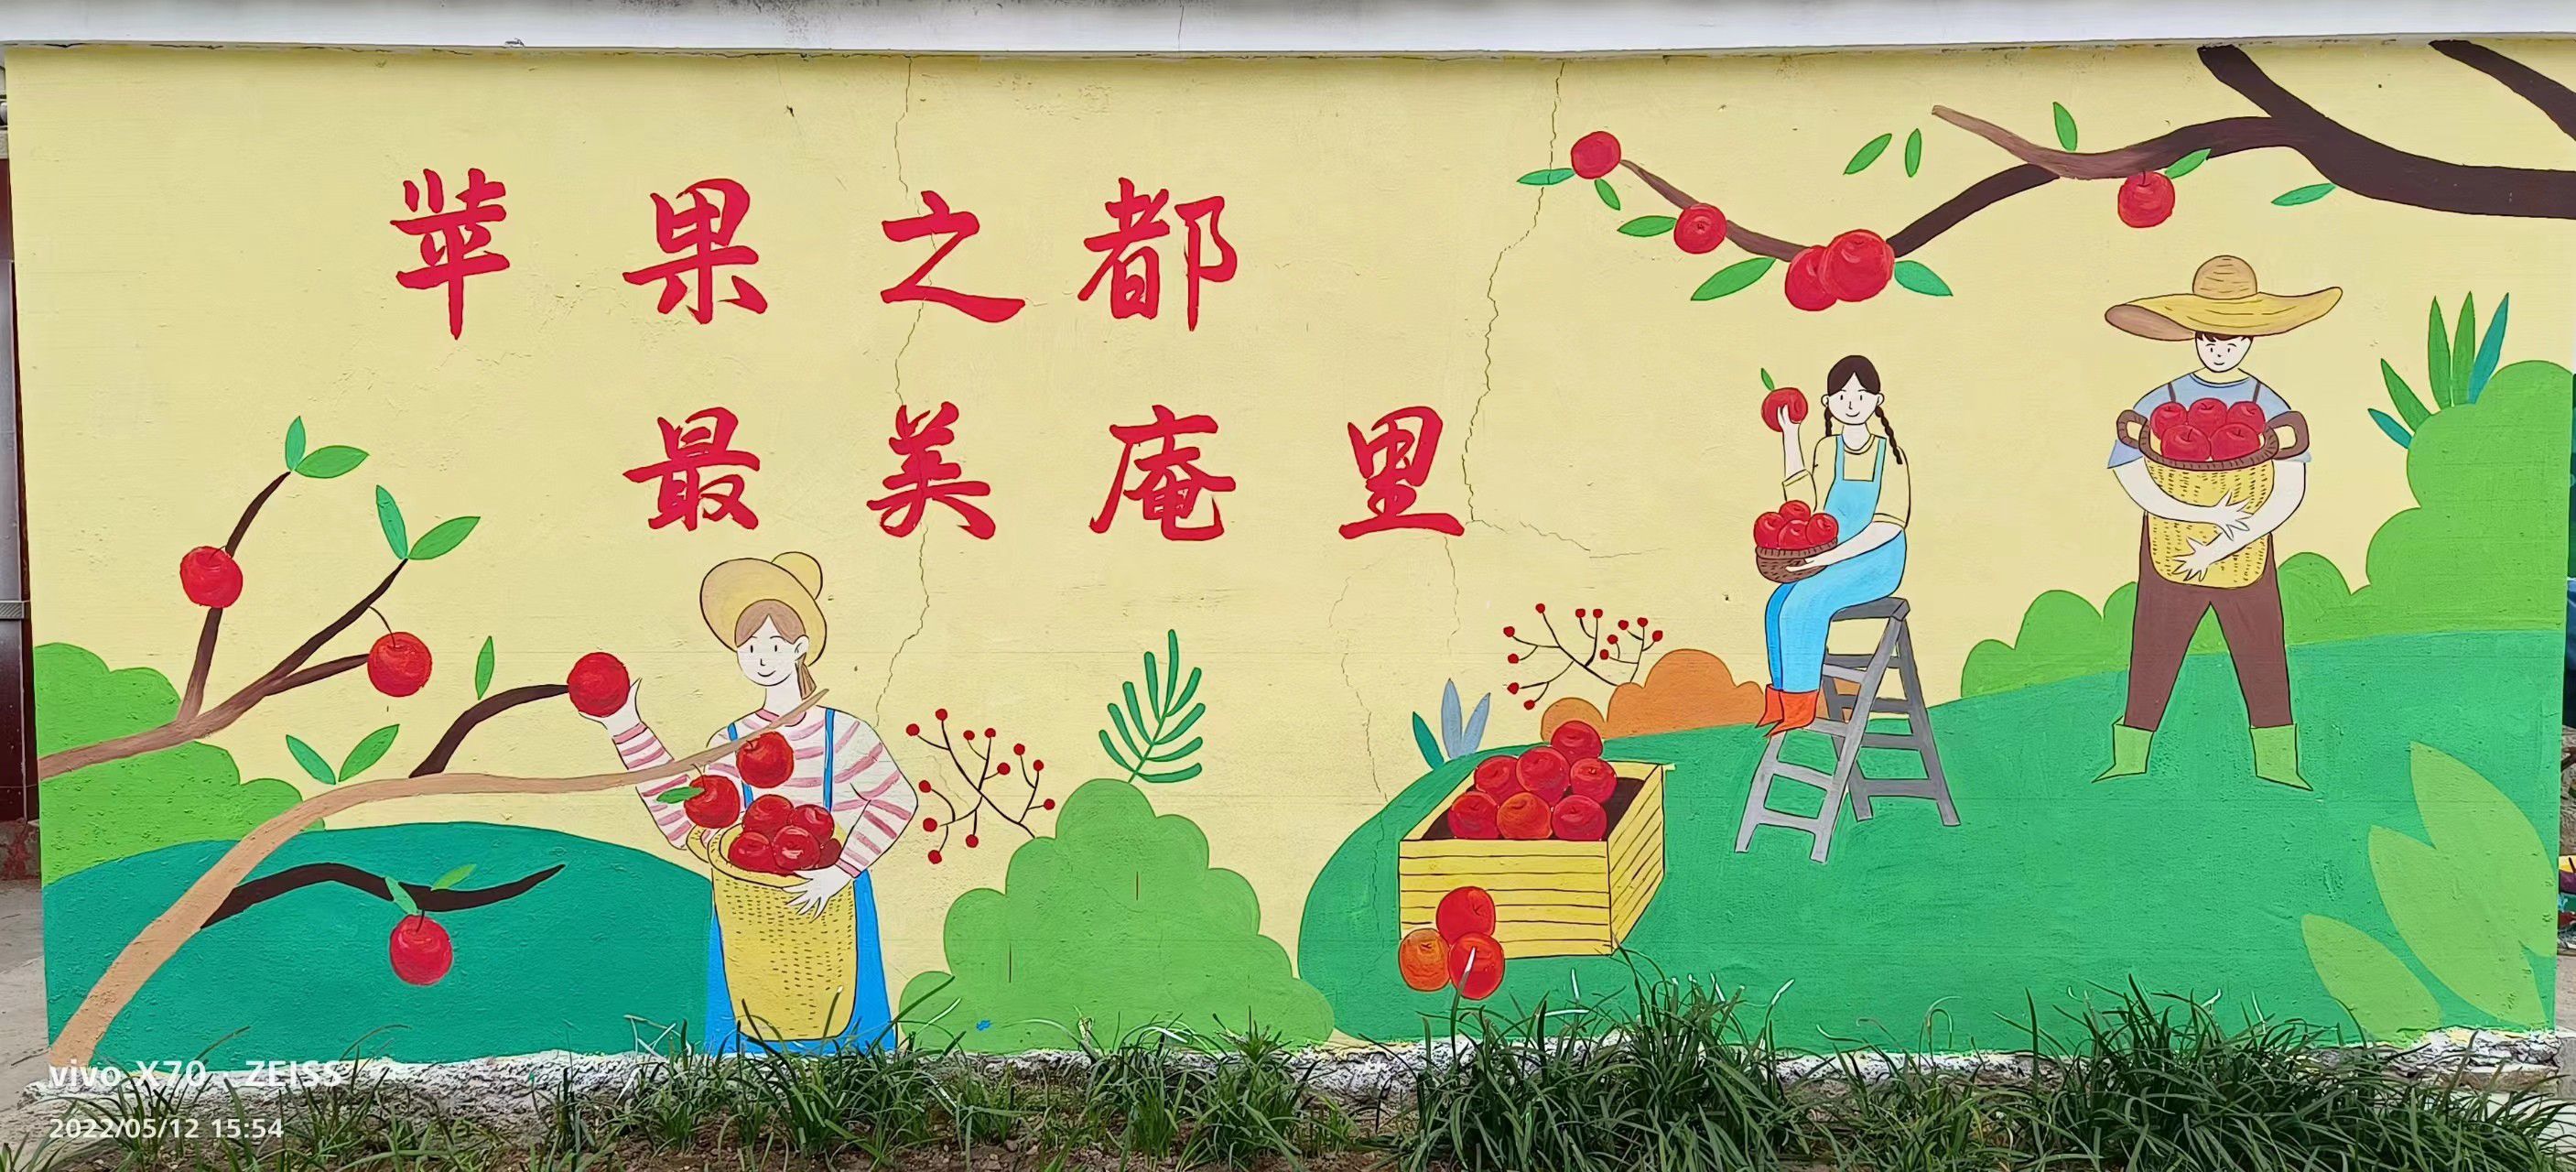 滨州墙体彩绘